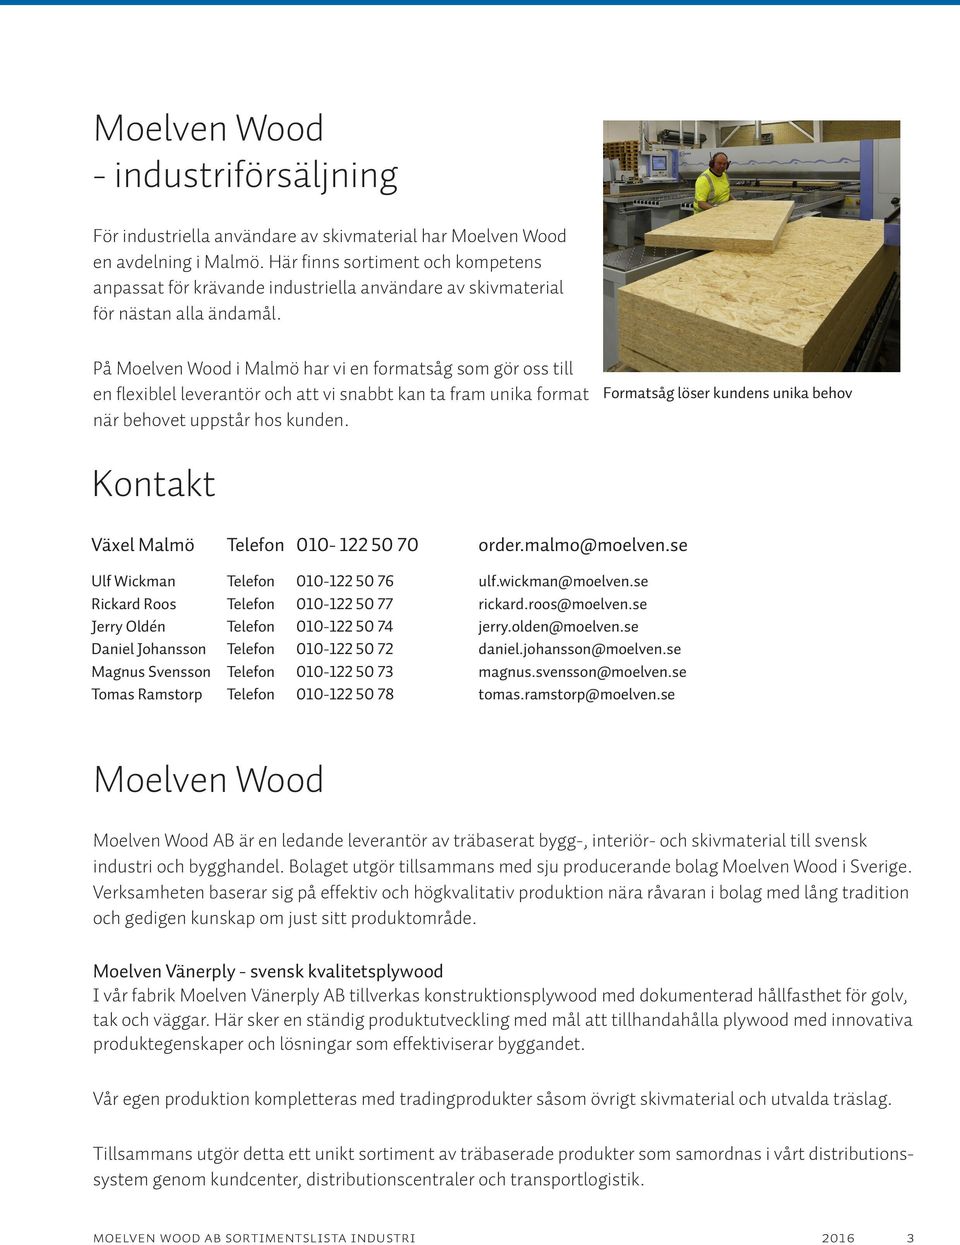 På Moelven Wood i Malmö har vi en formatsåg som gör oss till en flexiblel leverantör och att vi snabbt kan ta fram unika format när behovet uppstår hos kunden.